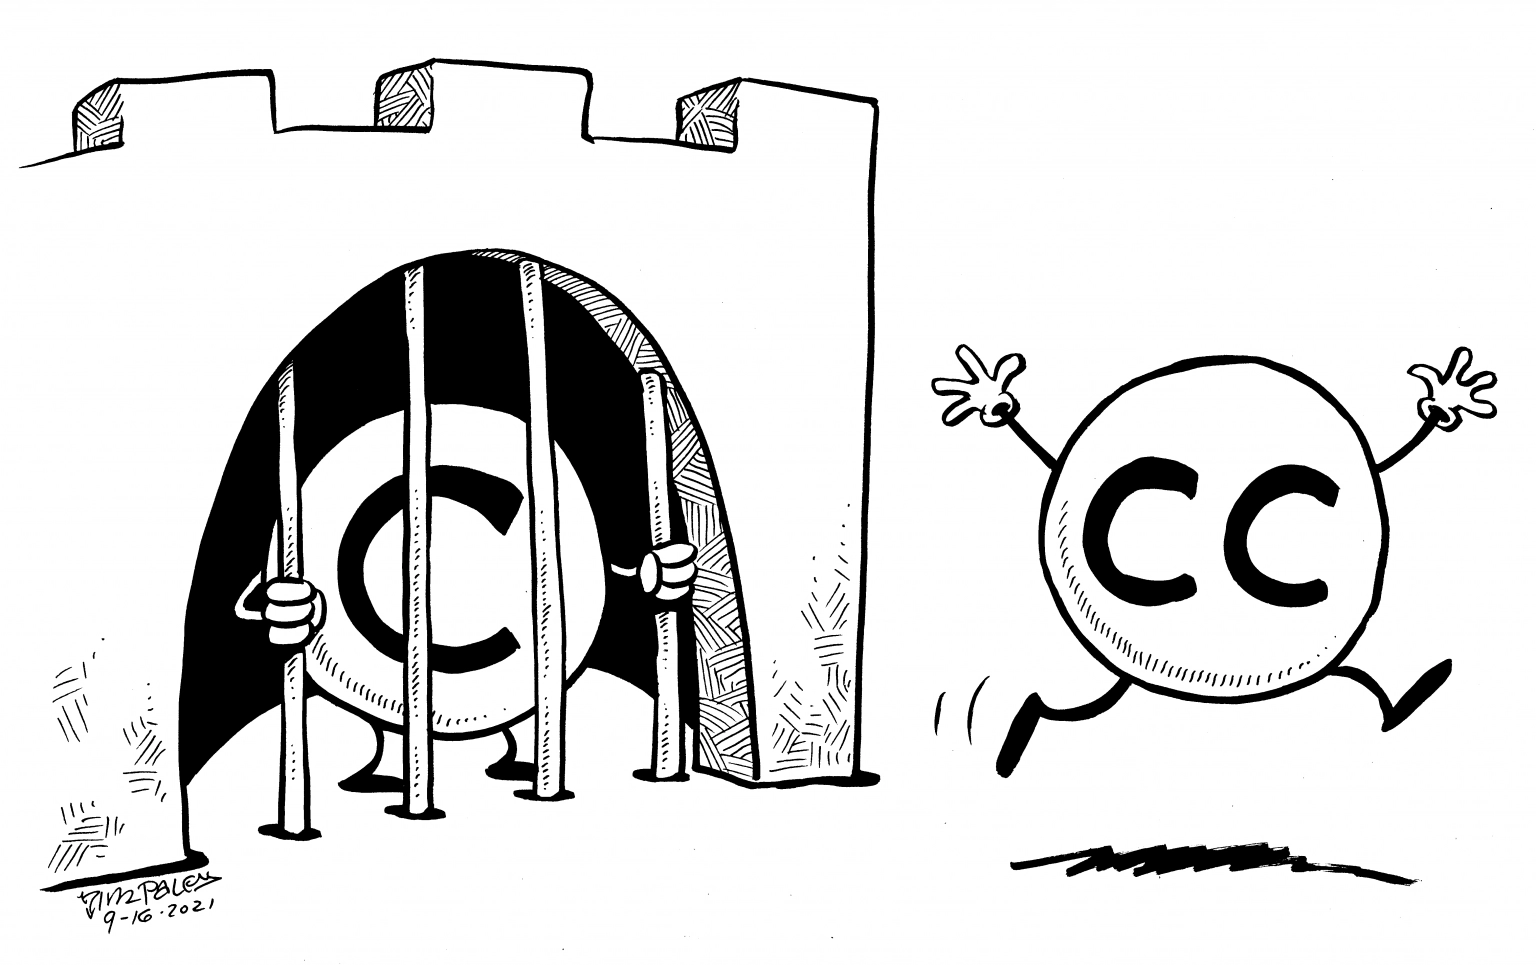 deux petits personnages simplifiés (boules avec 4 membres). l'un est enfermé derrière les barreaux d'une prison, il porte sur lui un C comme copyright, l'autre est libre et s'en va en courant, il porte les deux C de Cretaive Commons.